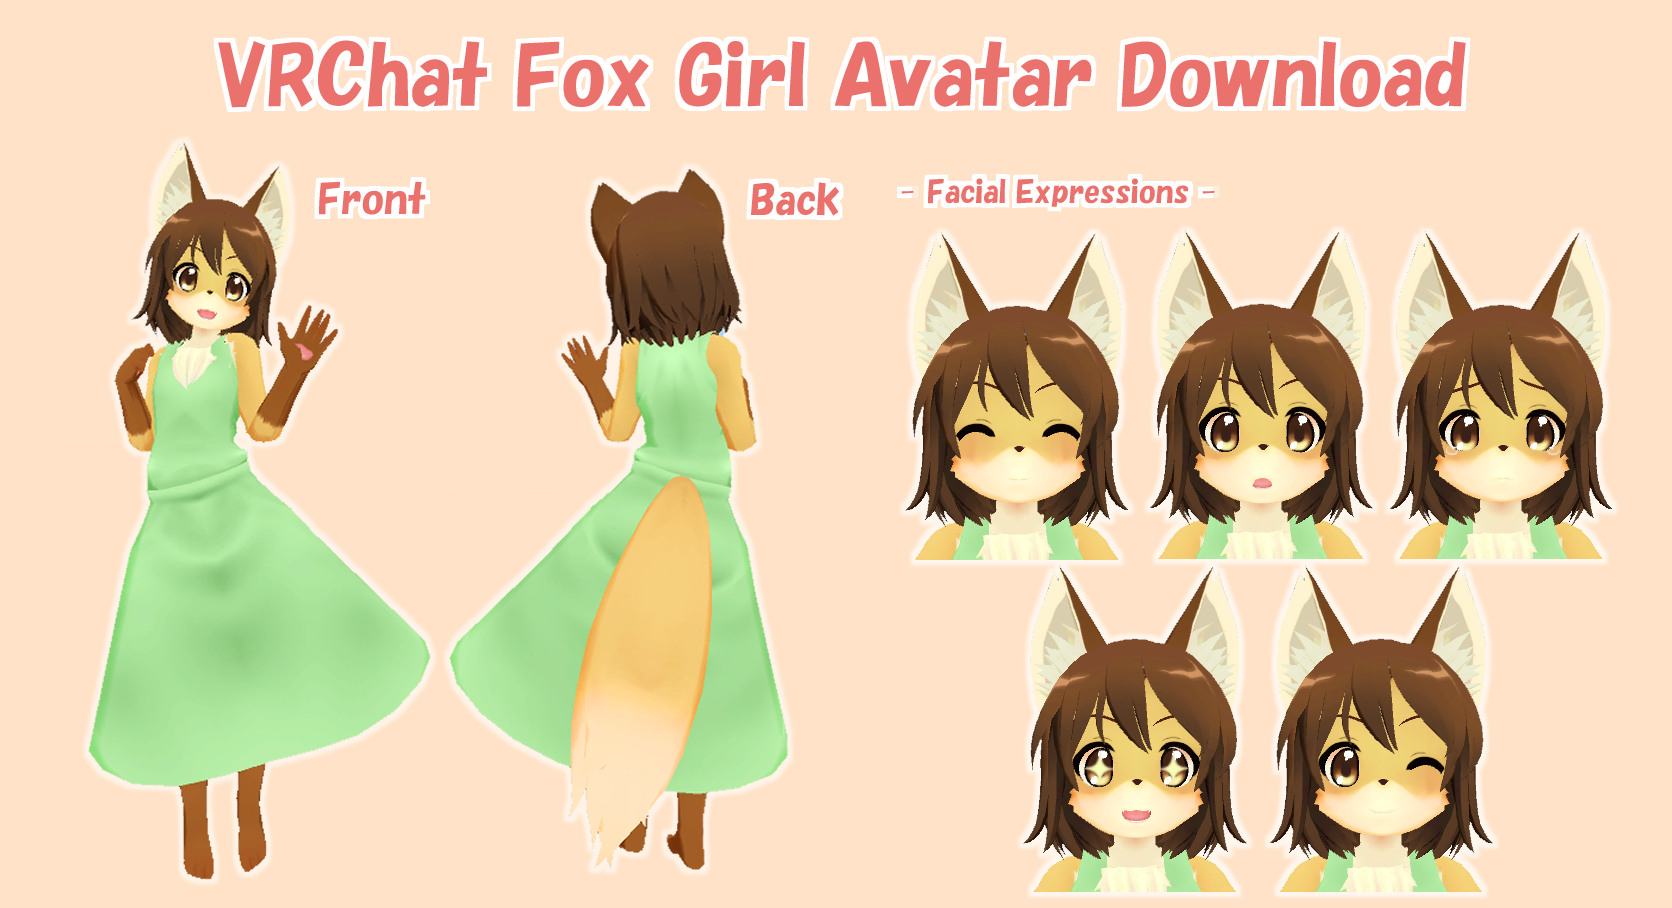 VRChat] Fox Girl Avatar Download by asdfg21 on DeviantArt - avatar con cáo VRChat
Bạn yêu thích vẻ ngoài dễ thương và đáng yêu của các nhân vật chó con cáo trong VRChat? Với bộ avatar con cáo VRChat từ DeviantArt, bạn sẽ có thêm nhiều lựa chọn để tạo nên nhân vật cá tính của riêng mình. Hãy tải xuống và tham gia vào thế giới ảo để trải nghiệm những giây phút thú vị với những người chơi khác.